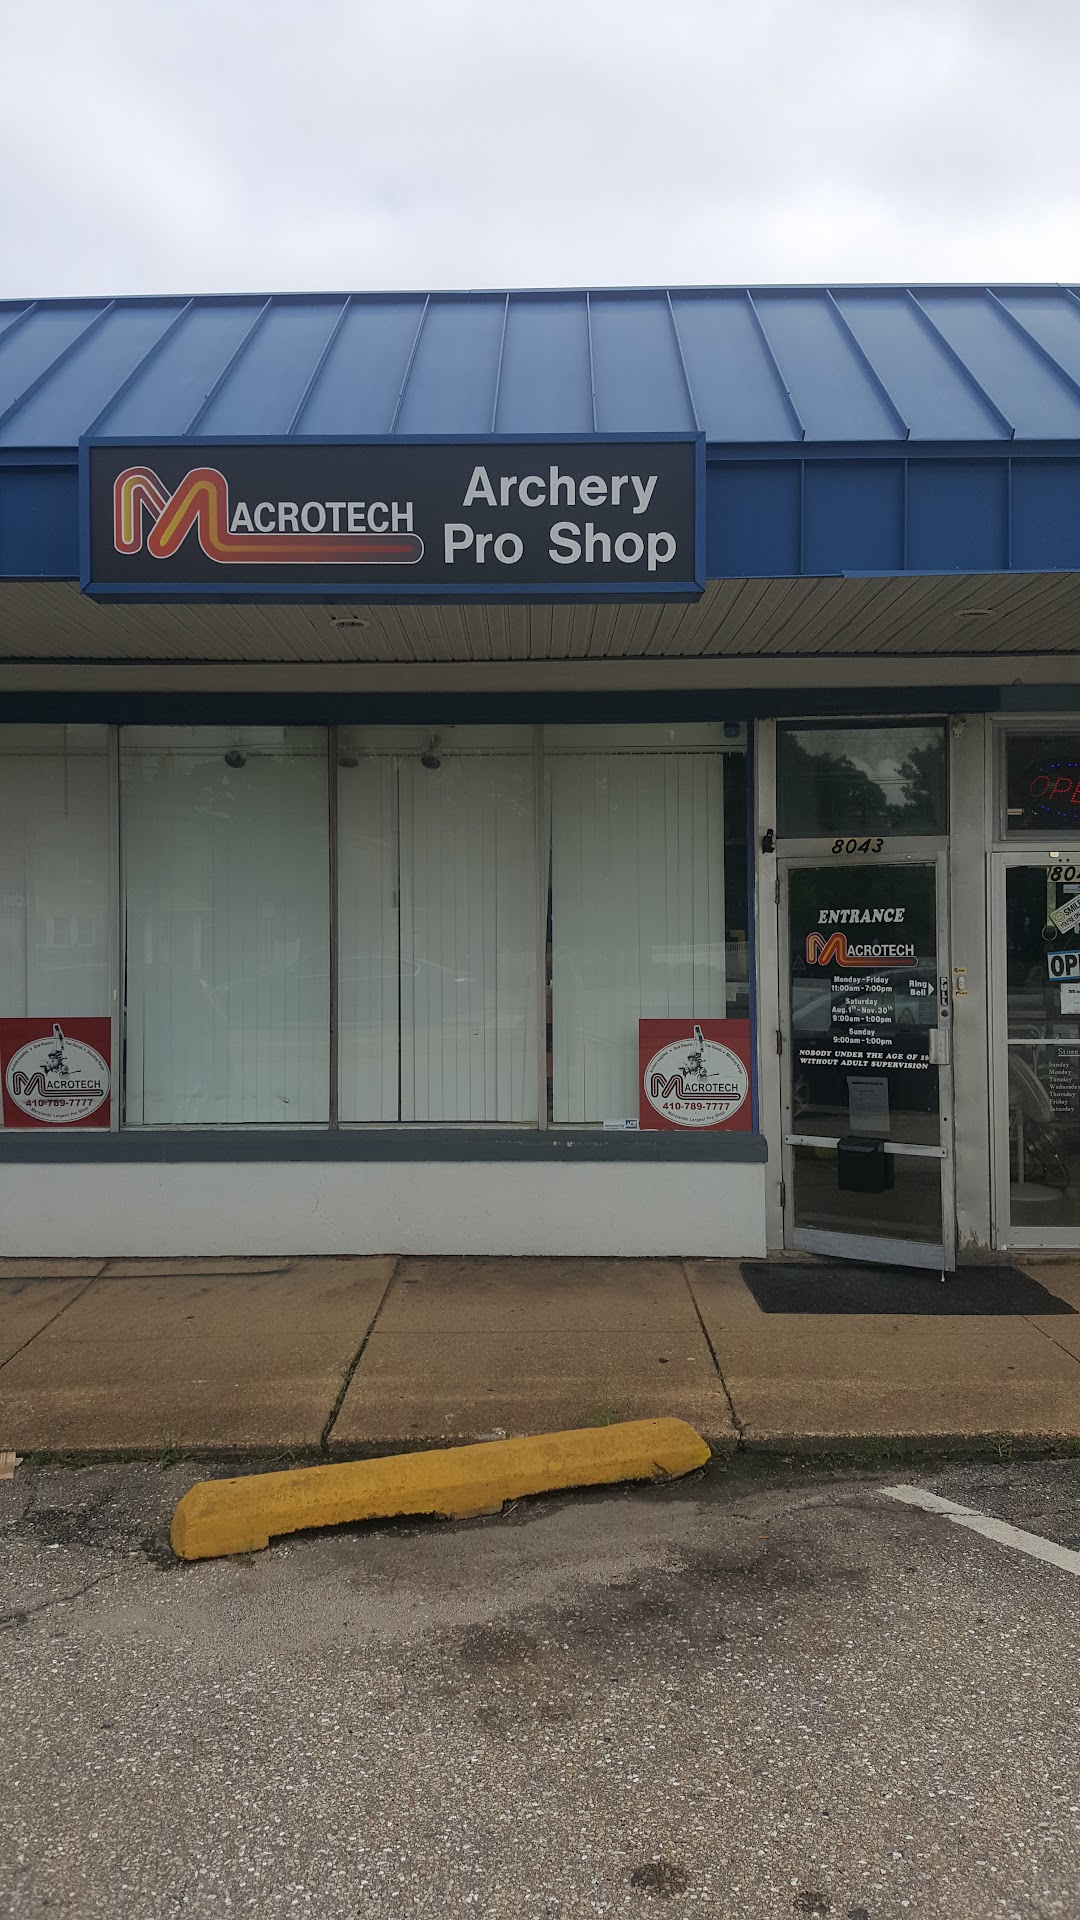 Macrotech Archery Pro Shop